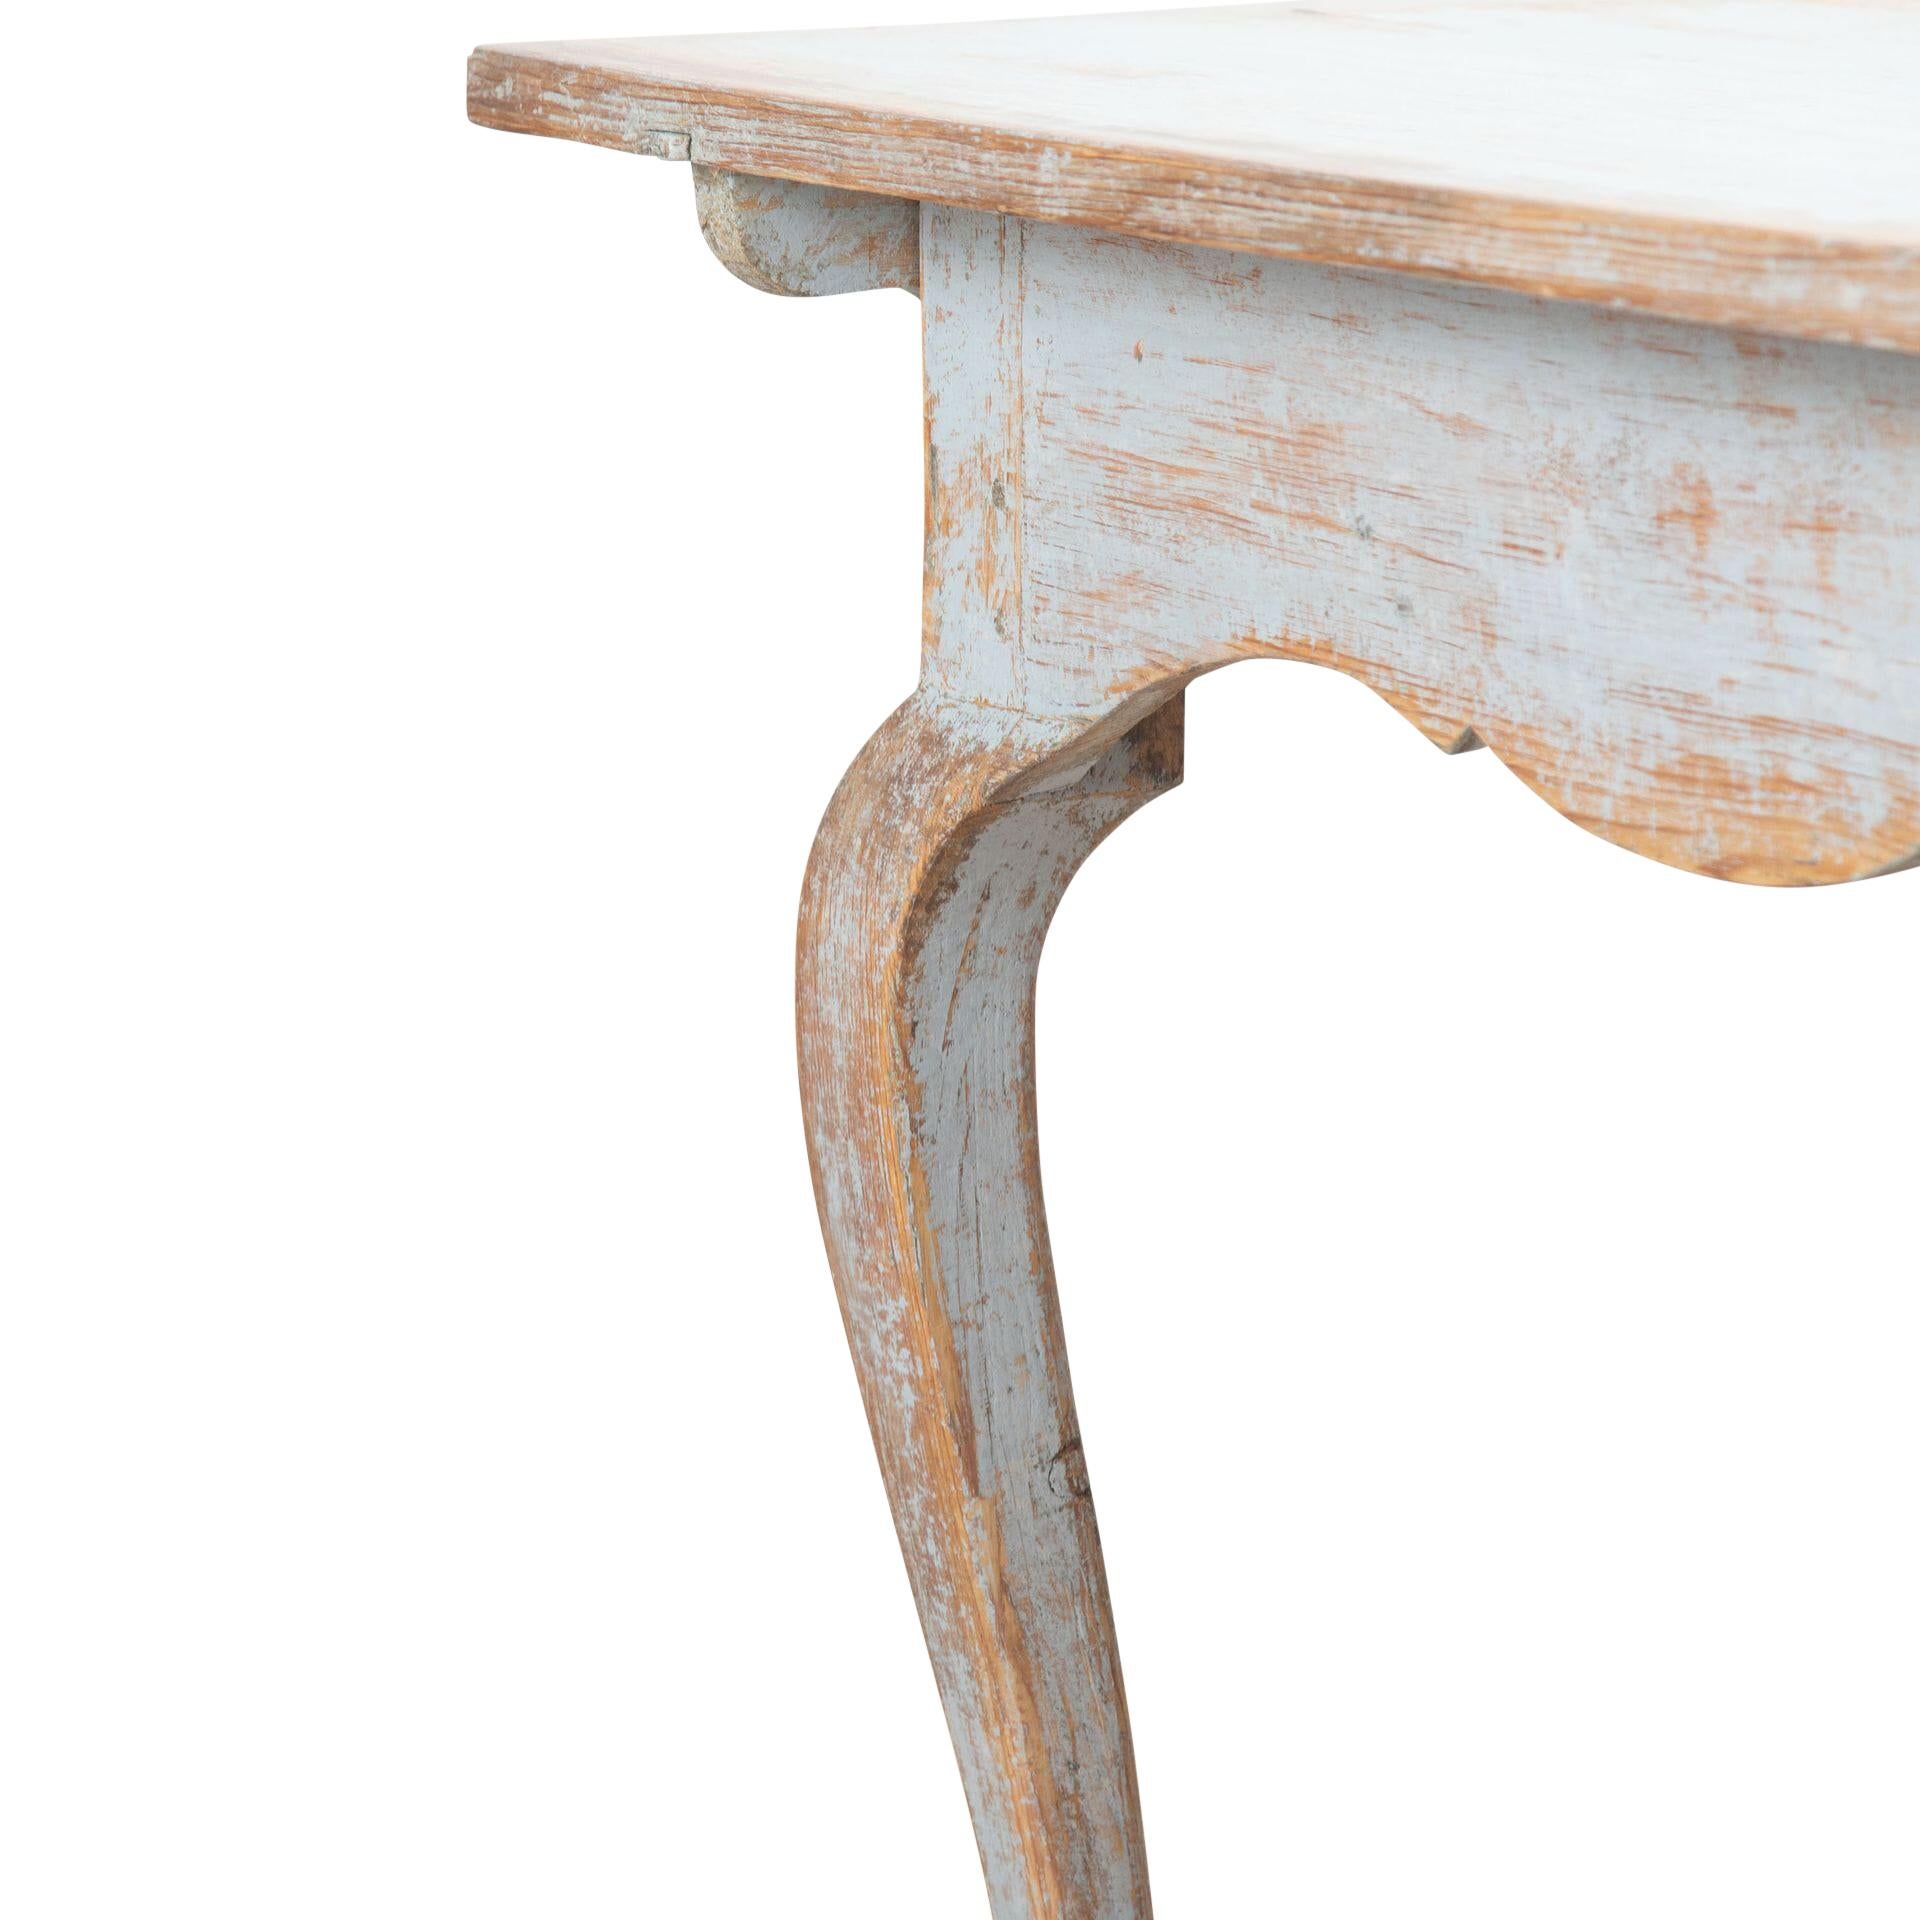 Zeitgenössischer Rokoko-Schreibtisch aus Dalarna Schweden.
Mit dekorativen geschwungenen Beinen und einer einzelnen Schublade.
Neu lackiert in sanftem Hellblau.
